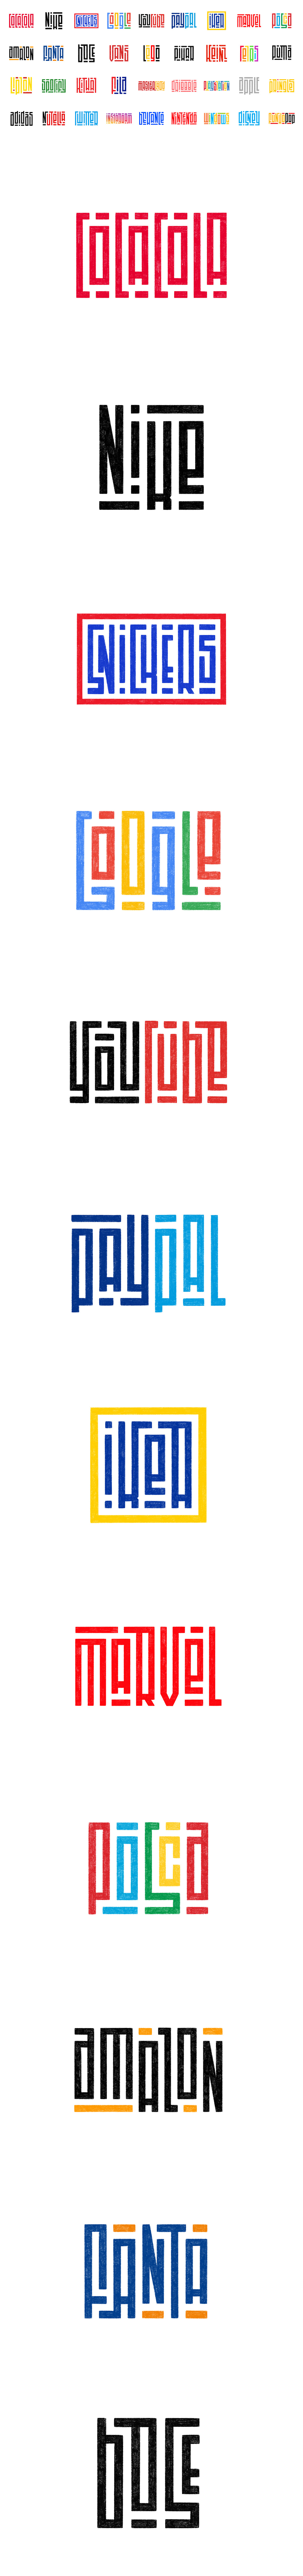 brand identity logo Logo Design Logotype Rebrand Rebranding Logo  typography   visual identity